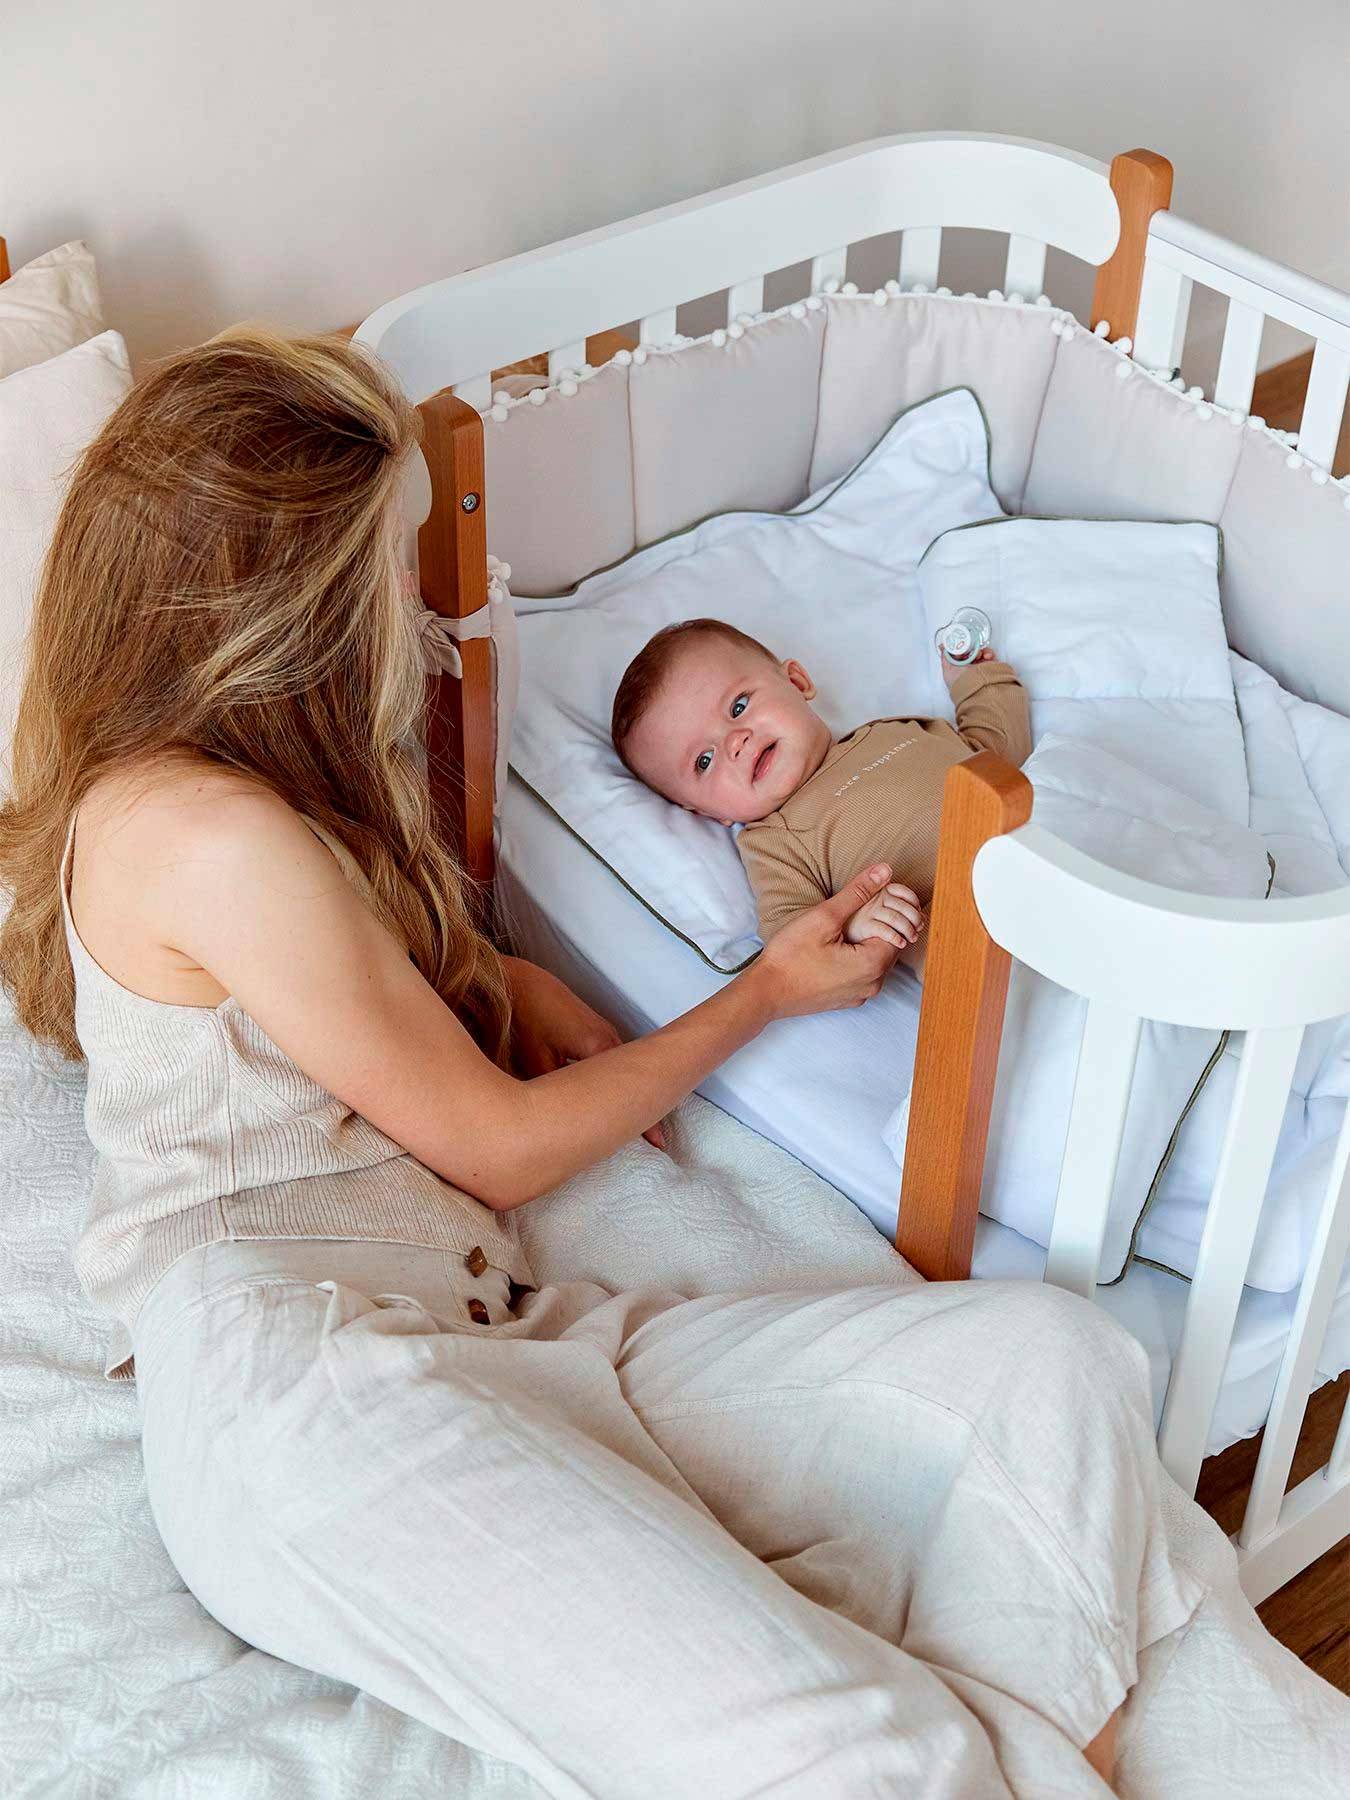 Виды кроваток для новорожденных